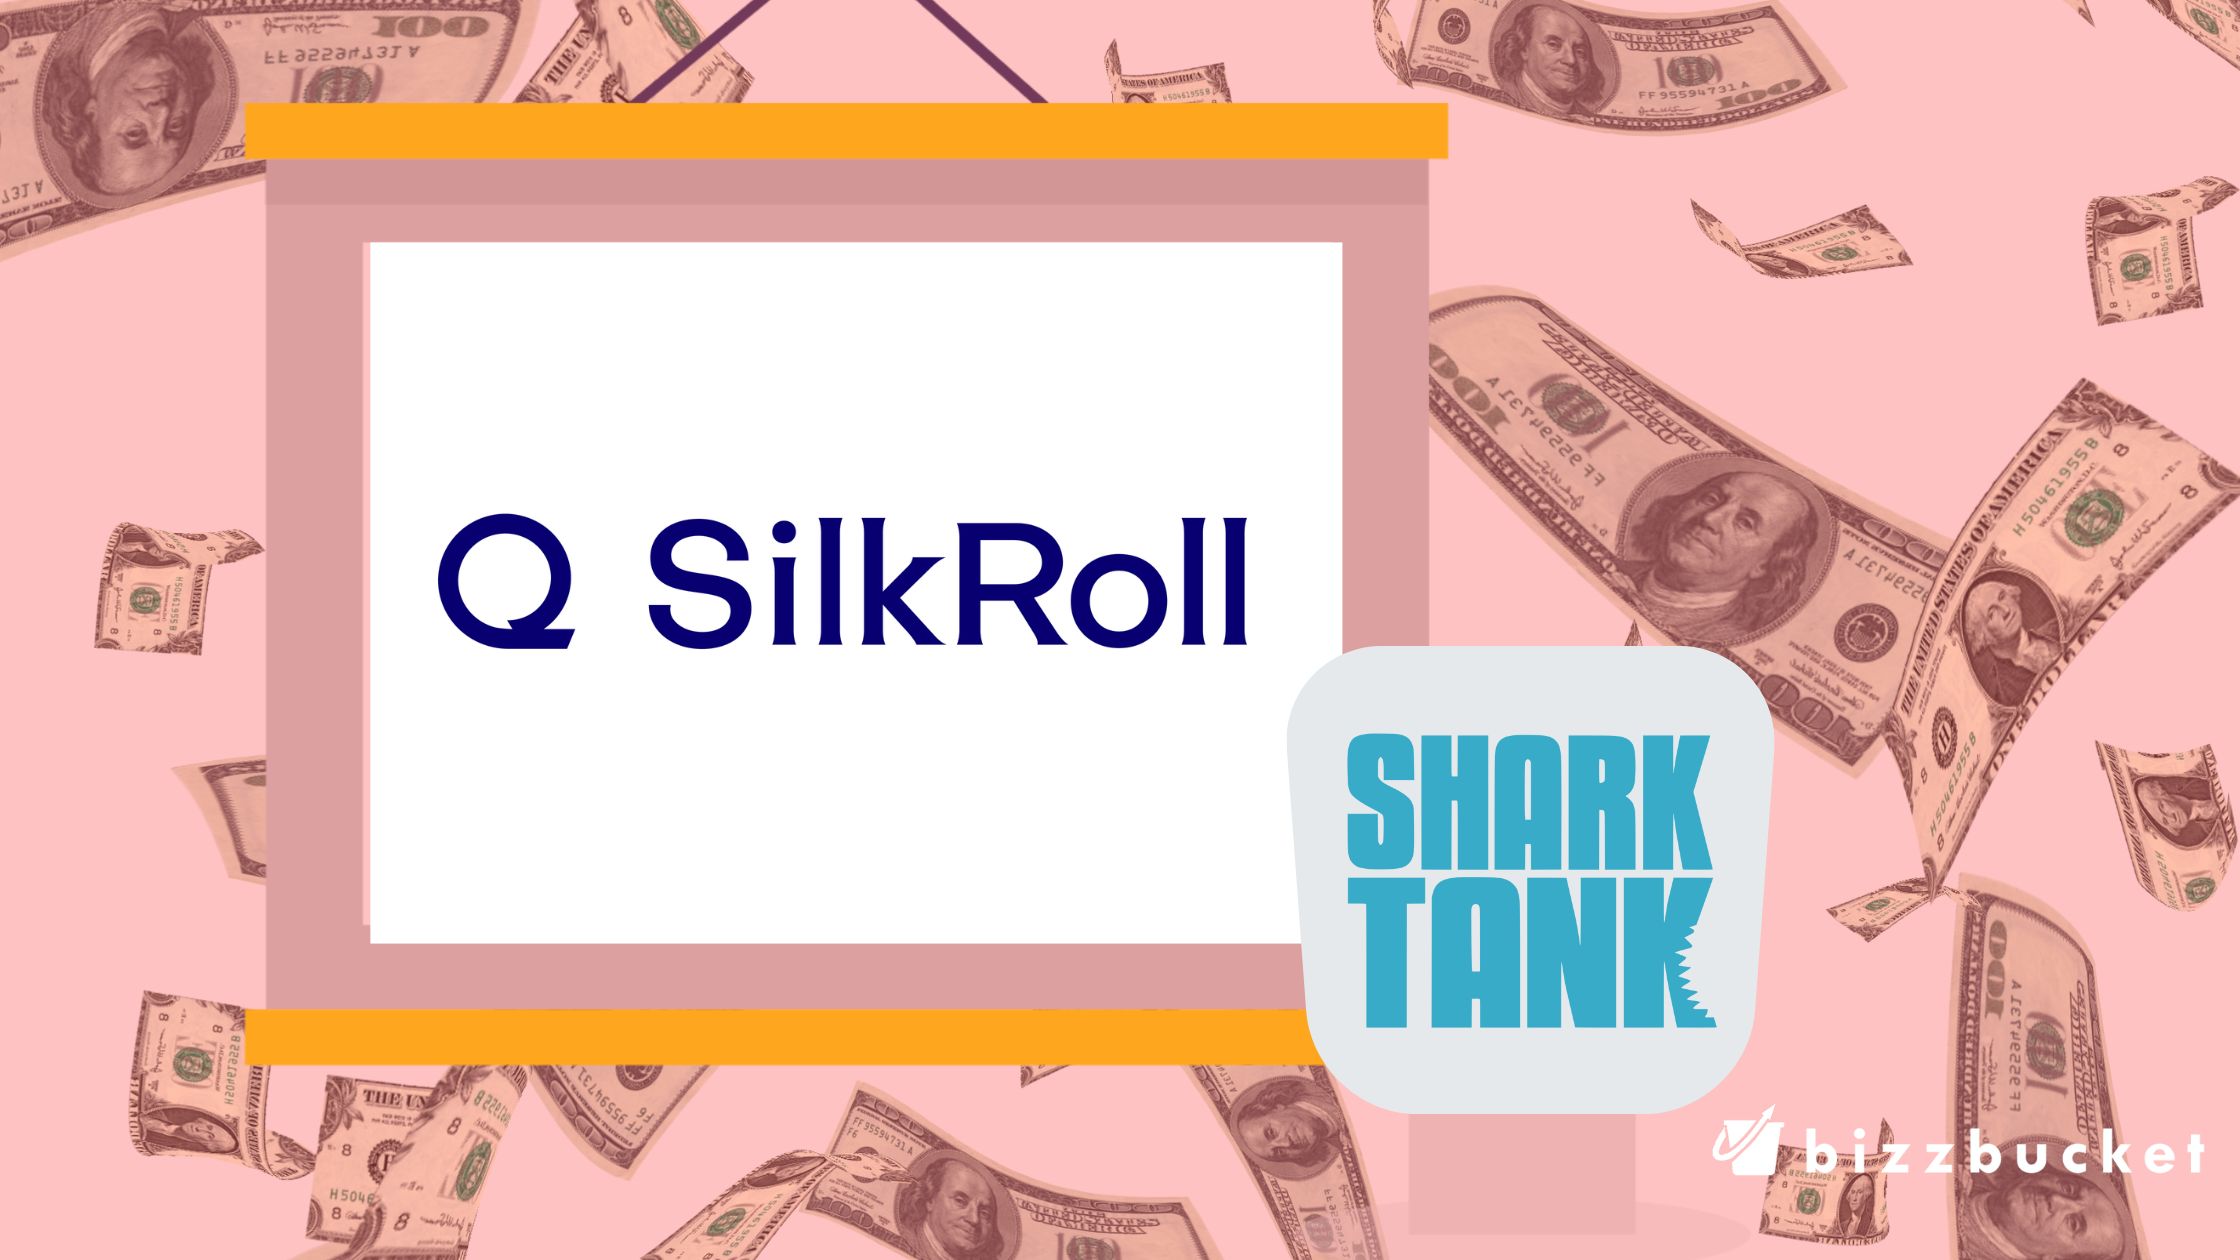 Silkroll shark tank